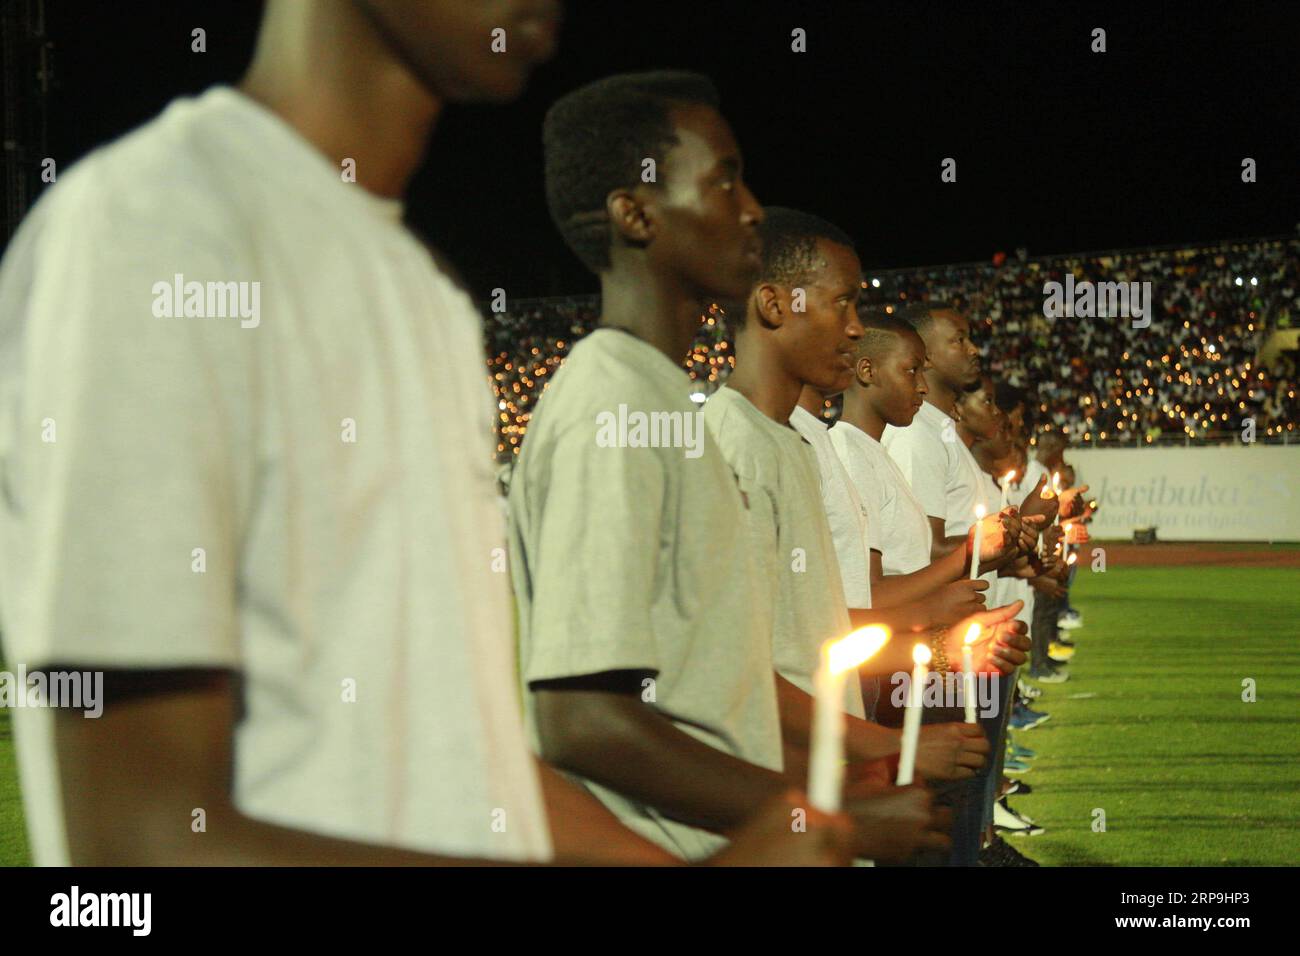 (190407) -- KIGALI, 7 aprile 2019 -- i giovani ruandesi tengono le candele in una veglia notturna per commemorare il 25° anniversario del genocidio del 1994, a Kigali, capitale del Ruanda, il 7 aprile 2019. I ruandesi di domenica hanno iniziato la commemorazione per celebrare il 25° anniversario del genocidio del 1994 che ha lasciato oltre 1 milione di morti, principalmente etnici tutsi, con il presidente Paul Kagame che chiede continui sforzi per trasformare il paese. ) RWANDA-KIGALI-GENOCIDIO-COMMEMORAZIONE CyrilxNdegeya PUBLICATIONxNOTxINxCHN Foto Stock